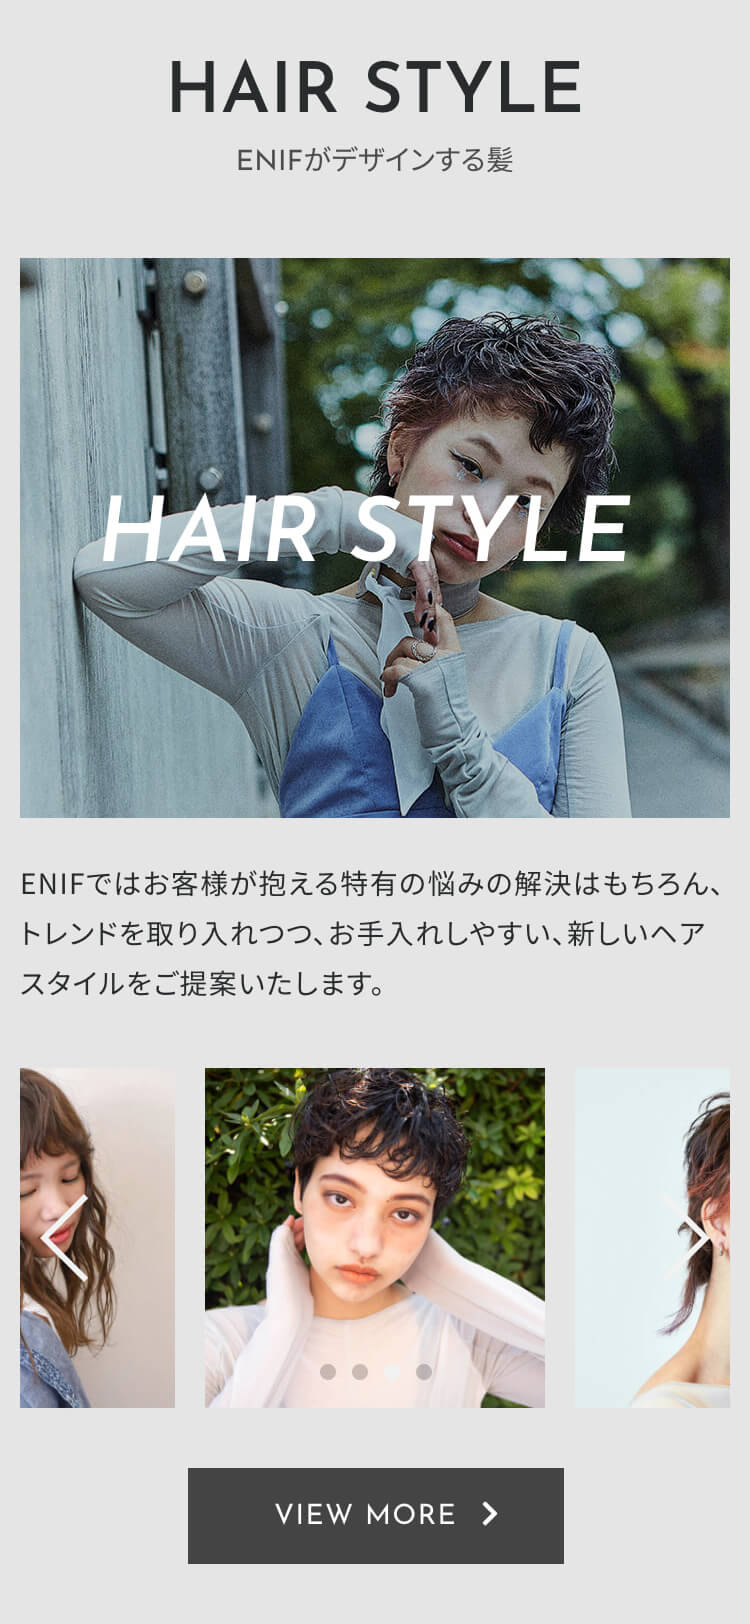 ENIFウェブサイトSPイメージ